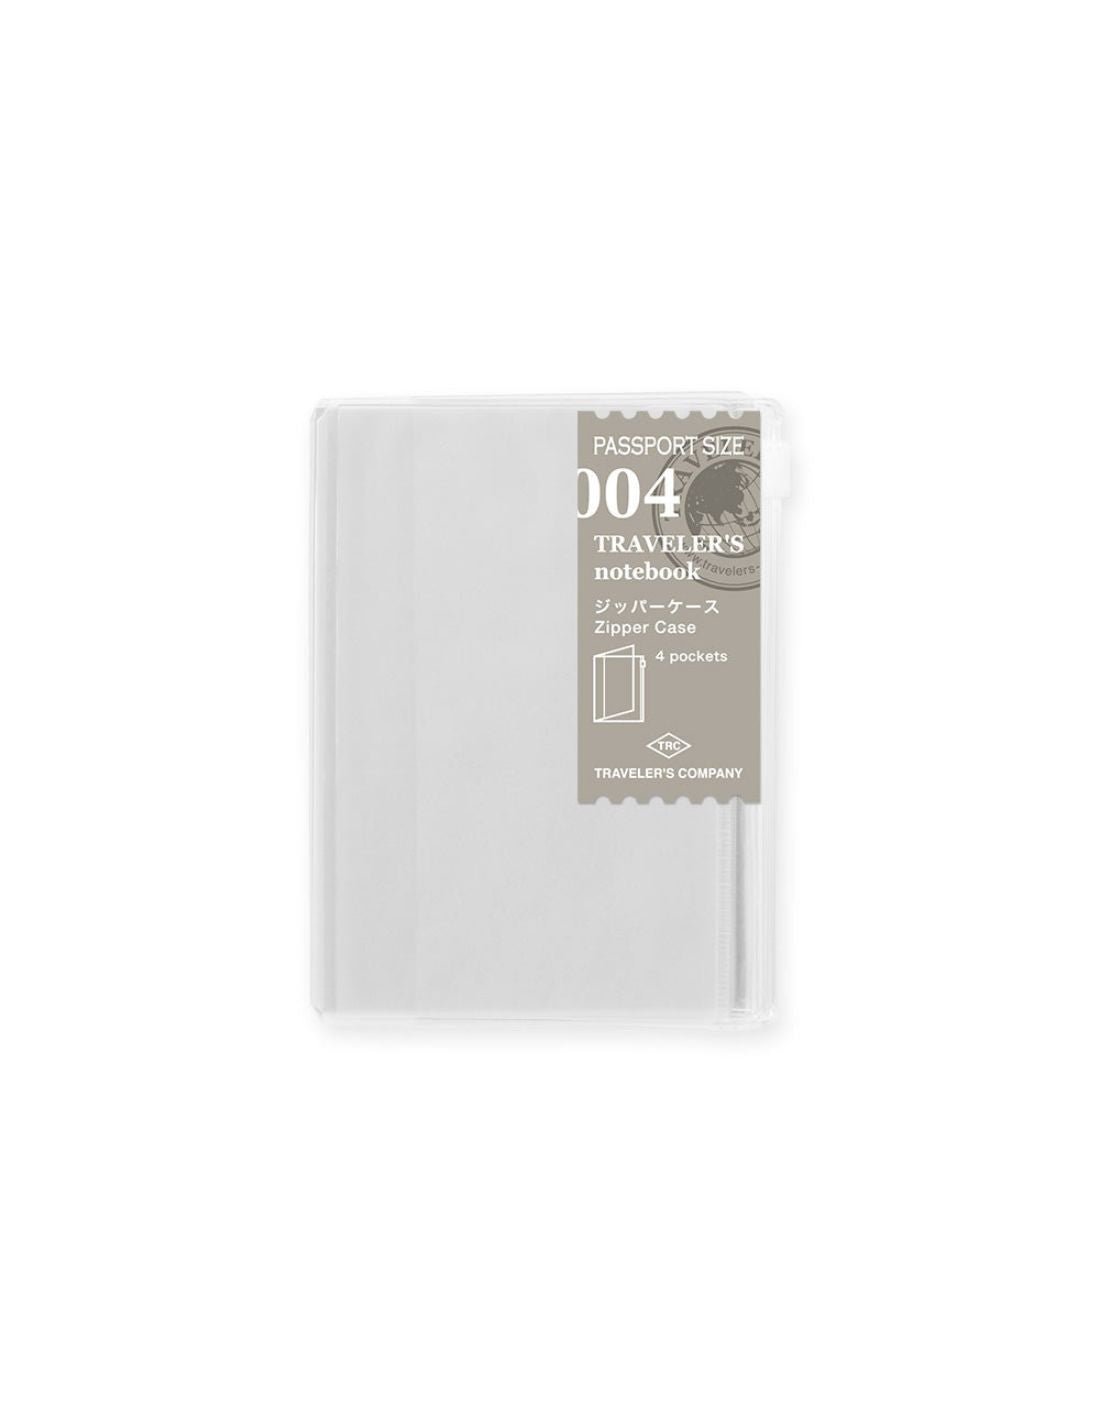 TRAVELER'S notebook 004 - pochettes zip (passport size) - TN Passport size - - 4902805143165